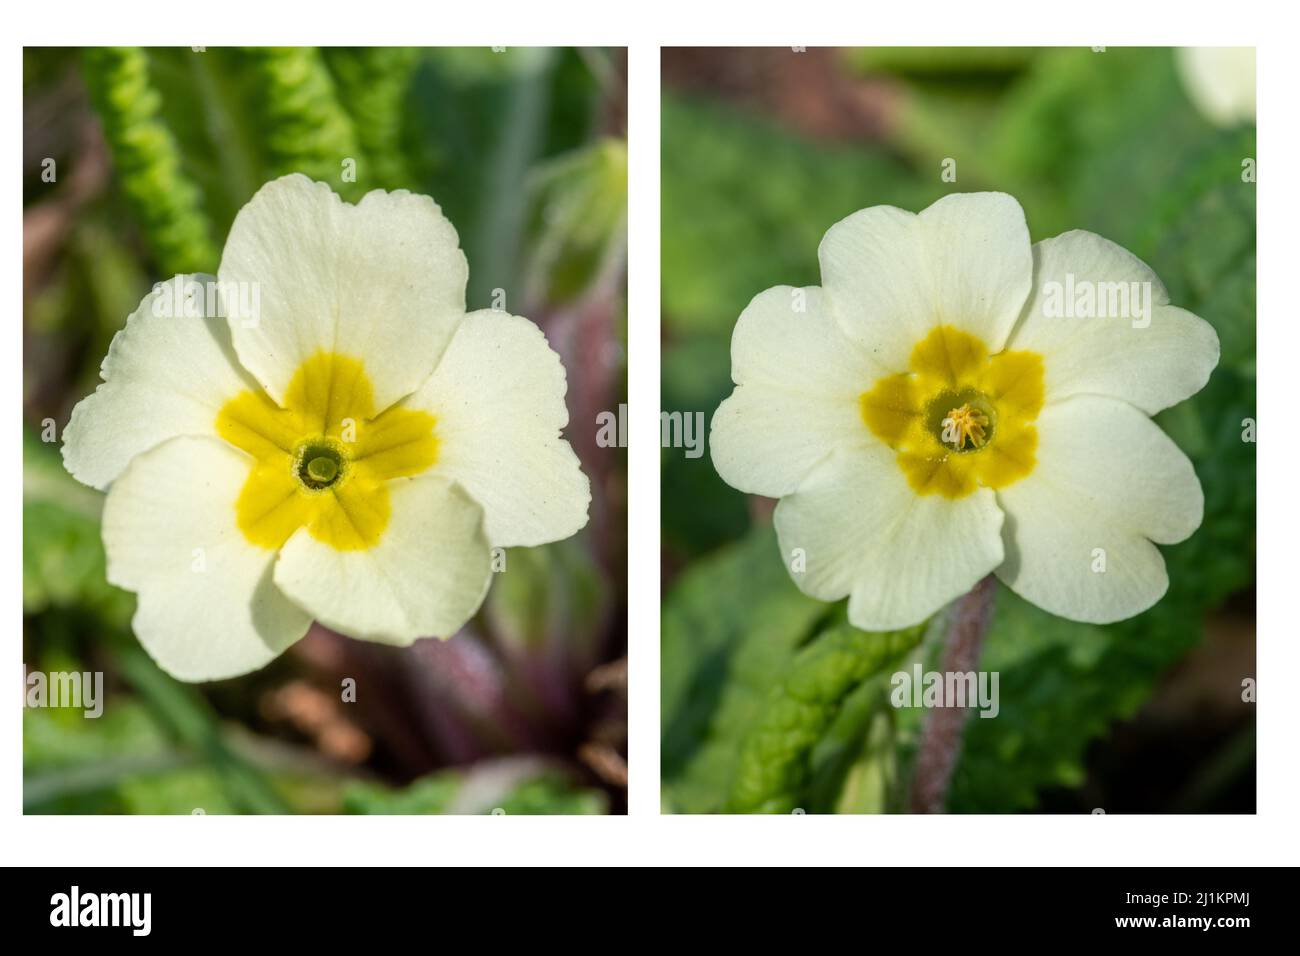 Primrose (Primula vulgaris), une fleur de printemps, Royaume-Uni. Gros plan des deux types de fleurs, fleurs à œil piqué (à gauche) et fleurs à œil de thrum (à droite). Banque D'Images